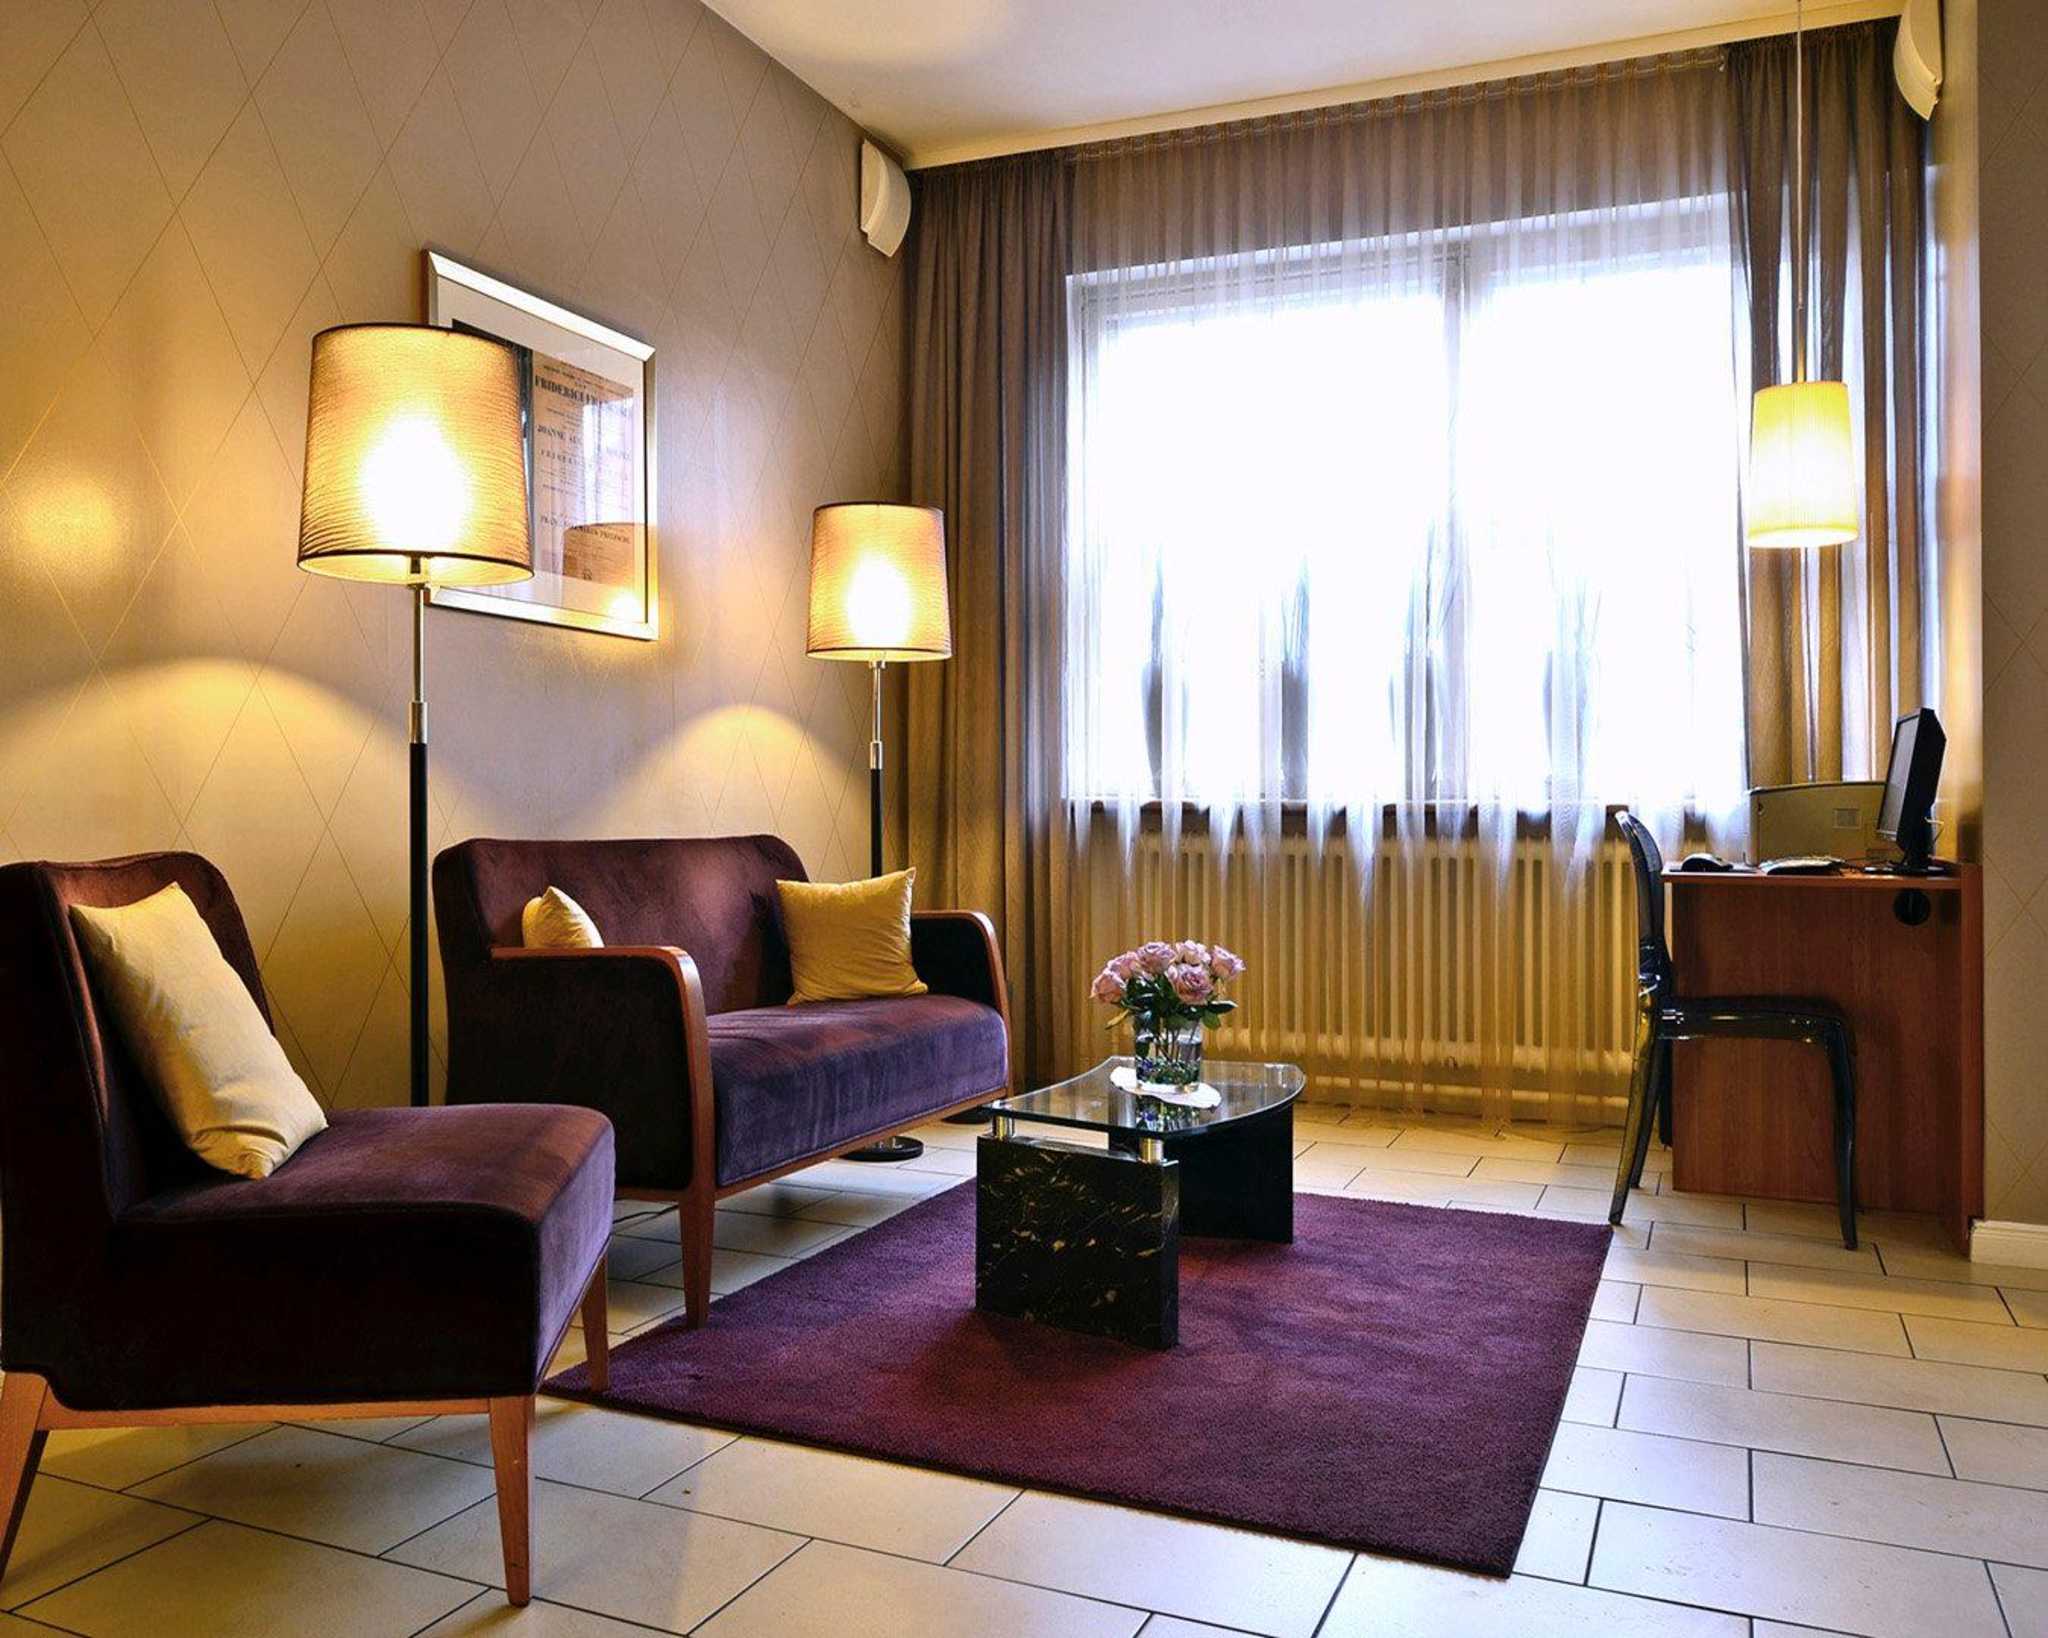 Comfort Hotel tom Kyle, Langer Segen 5a in Kiel